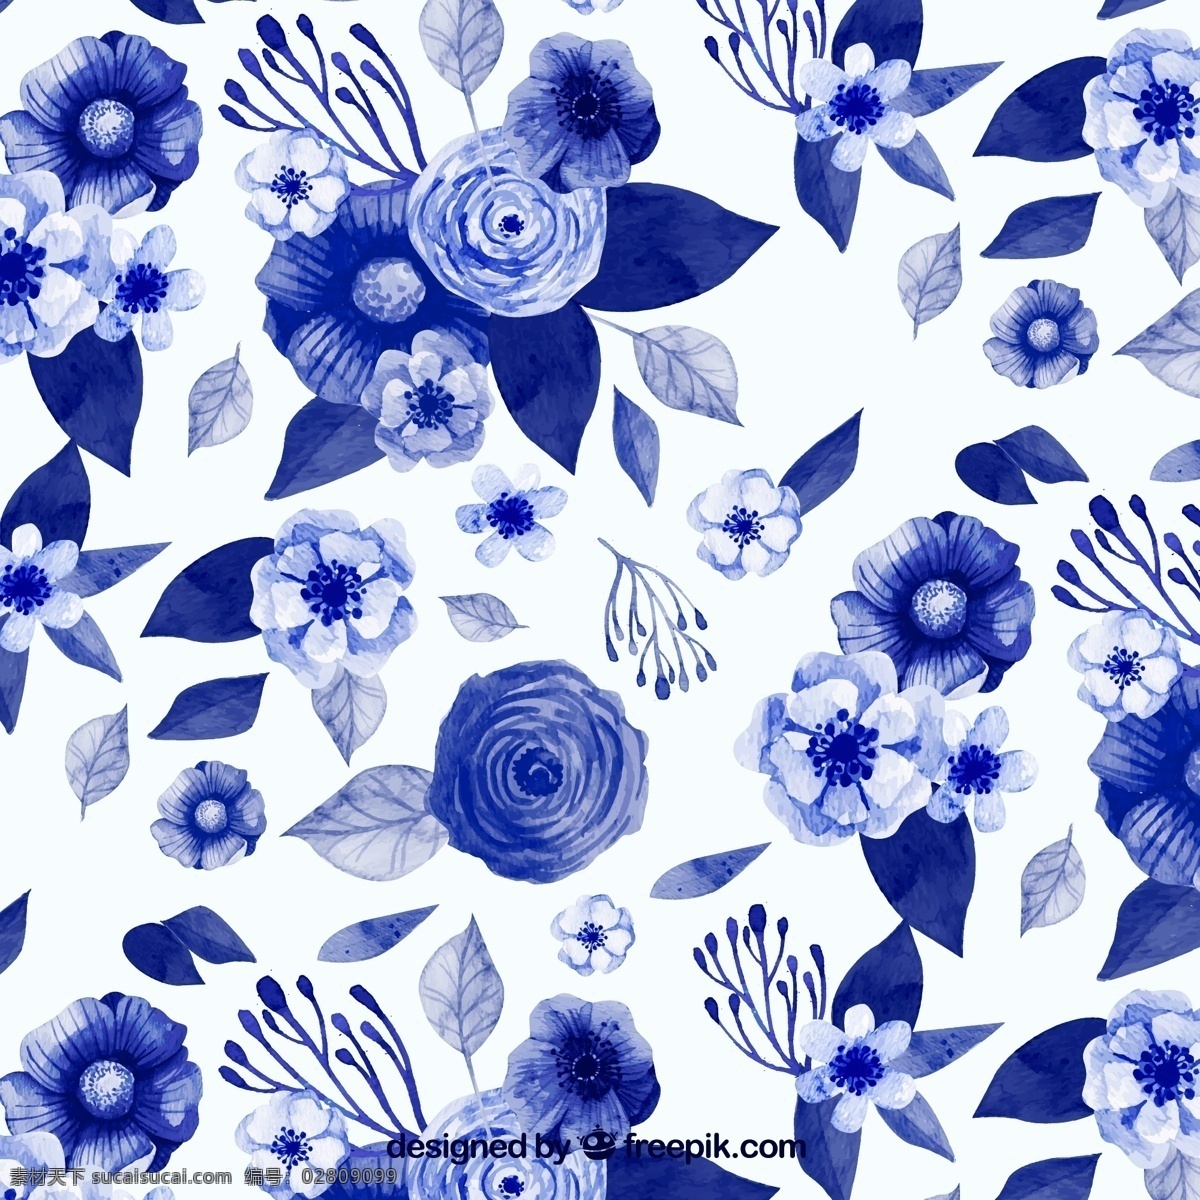 蓝色 水彩 花卉 图案 蓝色花卉图案 水彩花卉图案 花卉图案 装饰 服装